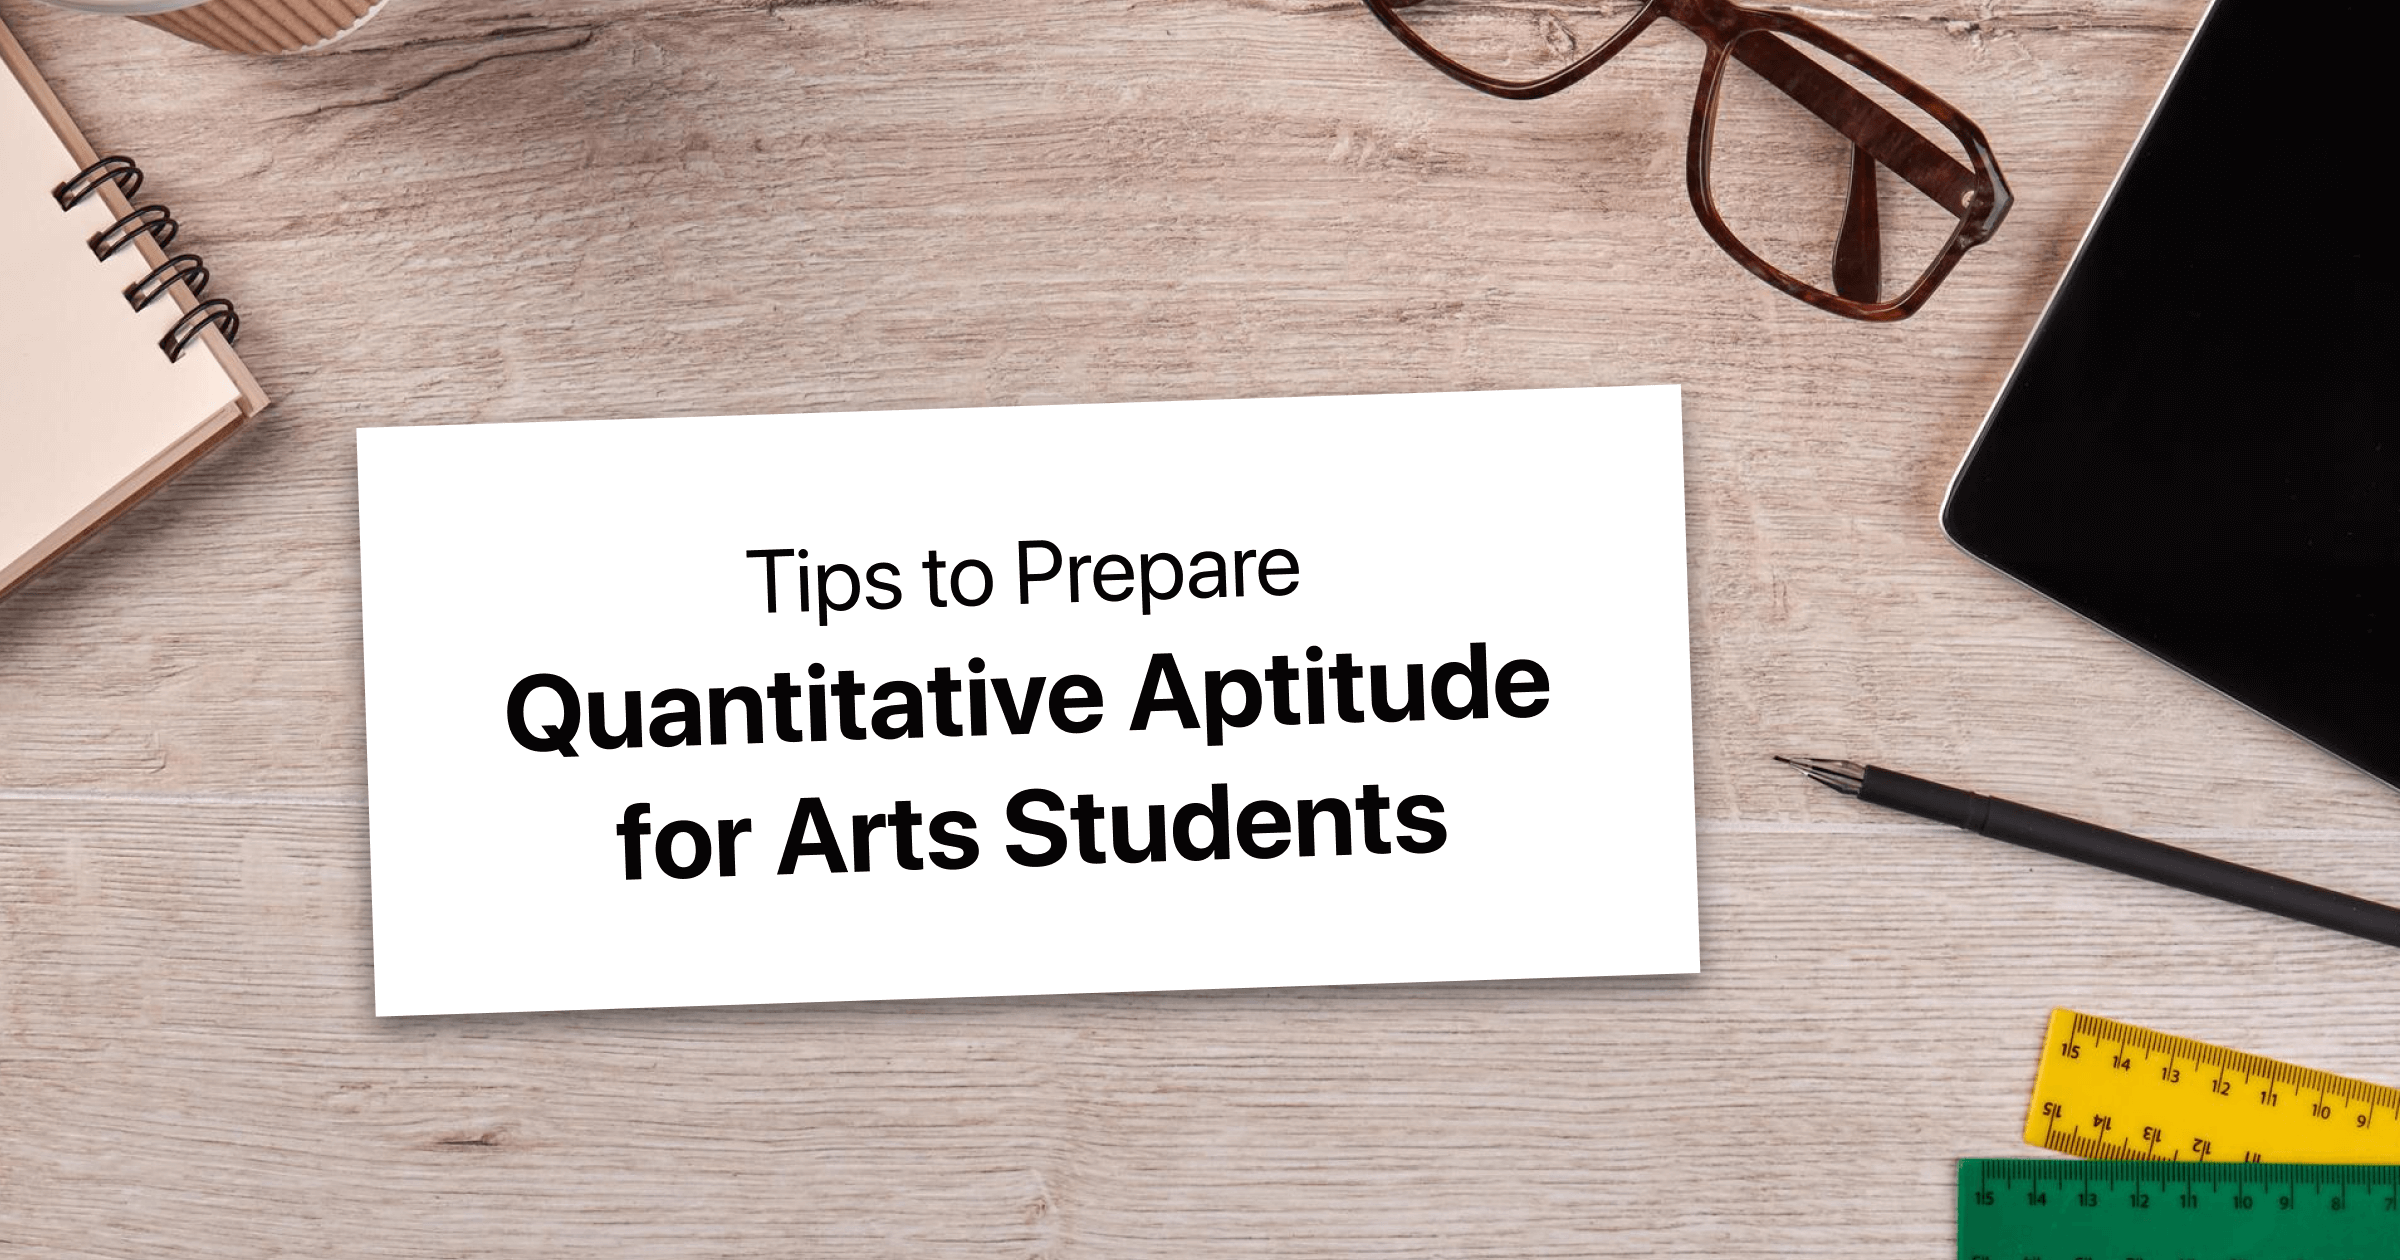 Tips to Prepare Quantitative Aptitude for Arts Students